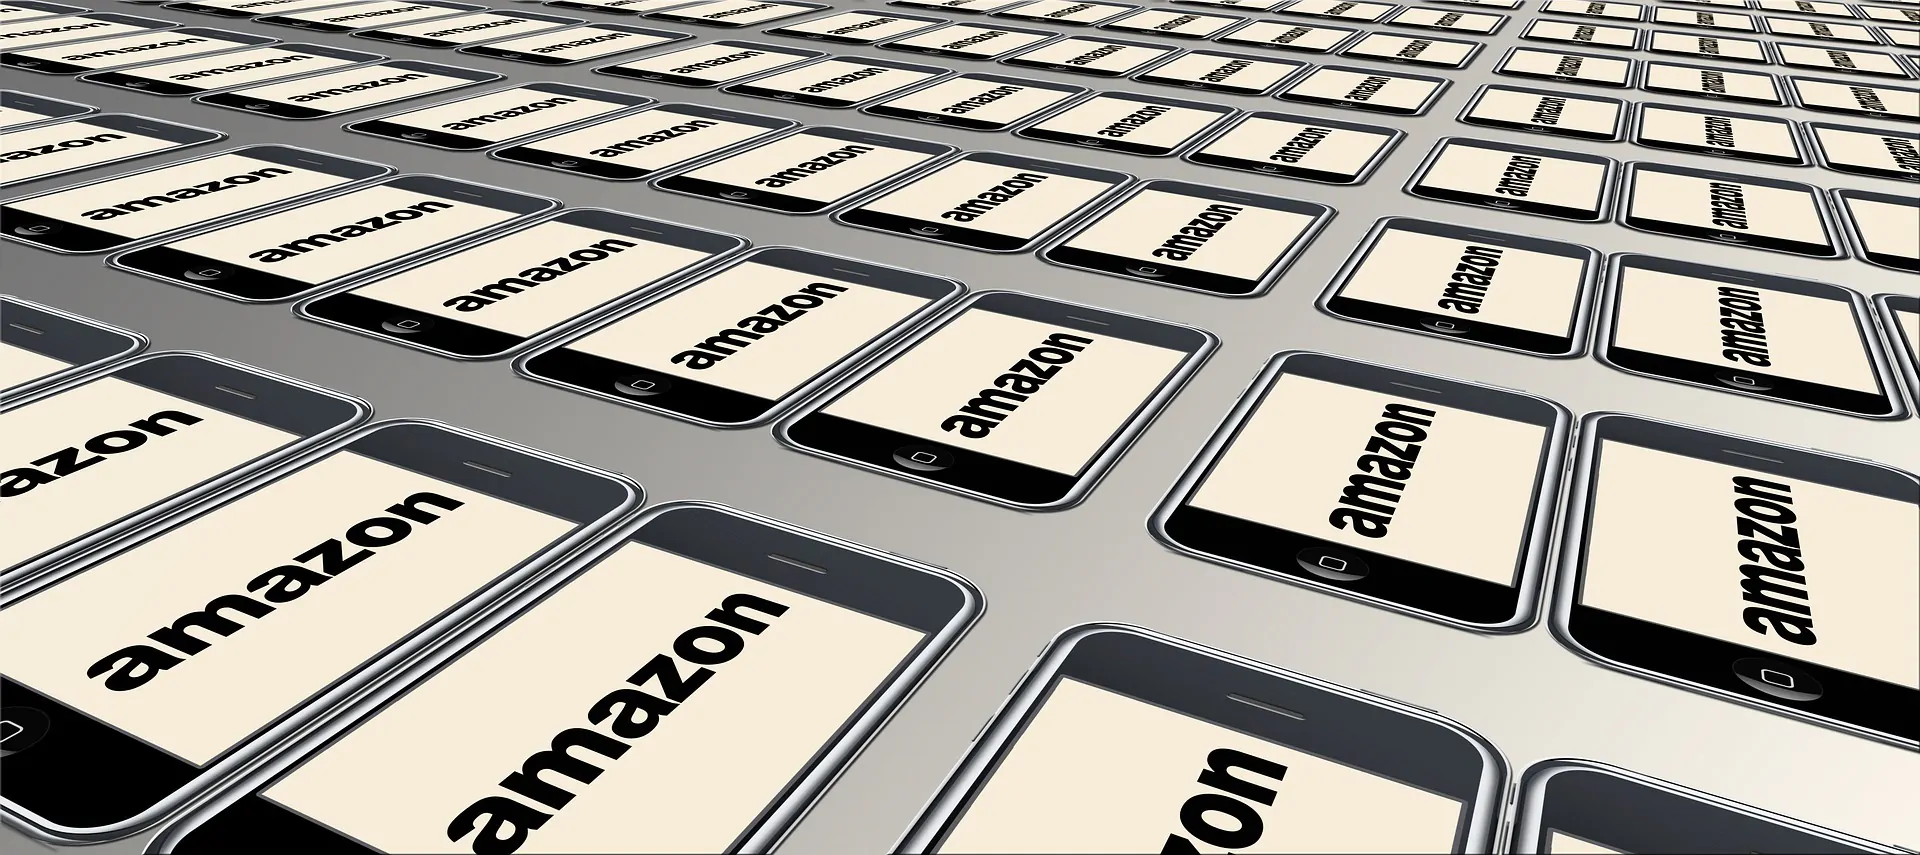 Offerte Amazon di Primavera: come funzionano e le migliori promozioni